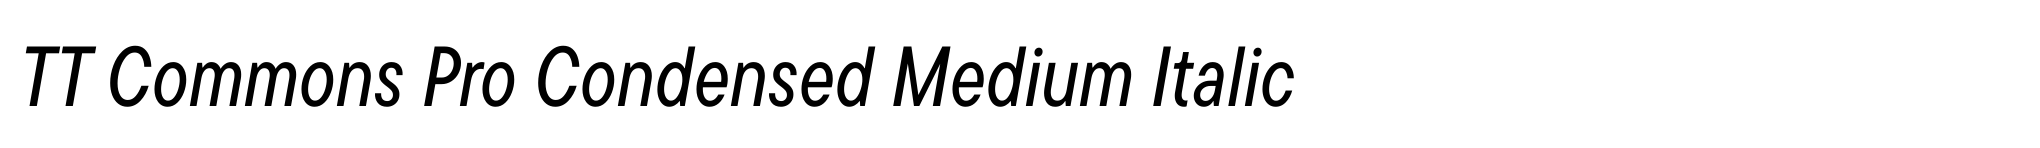 TT Commons Pro Condensed Medium Italic image